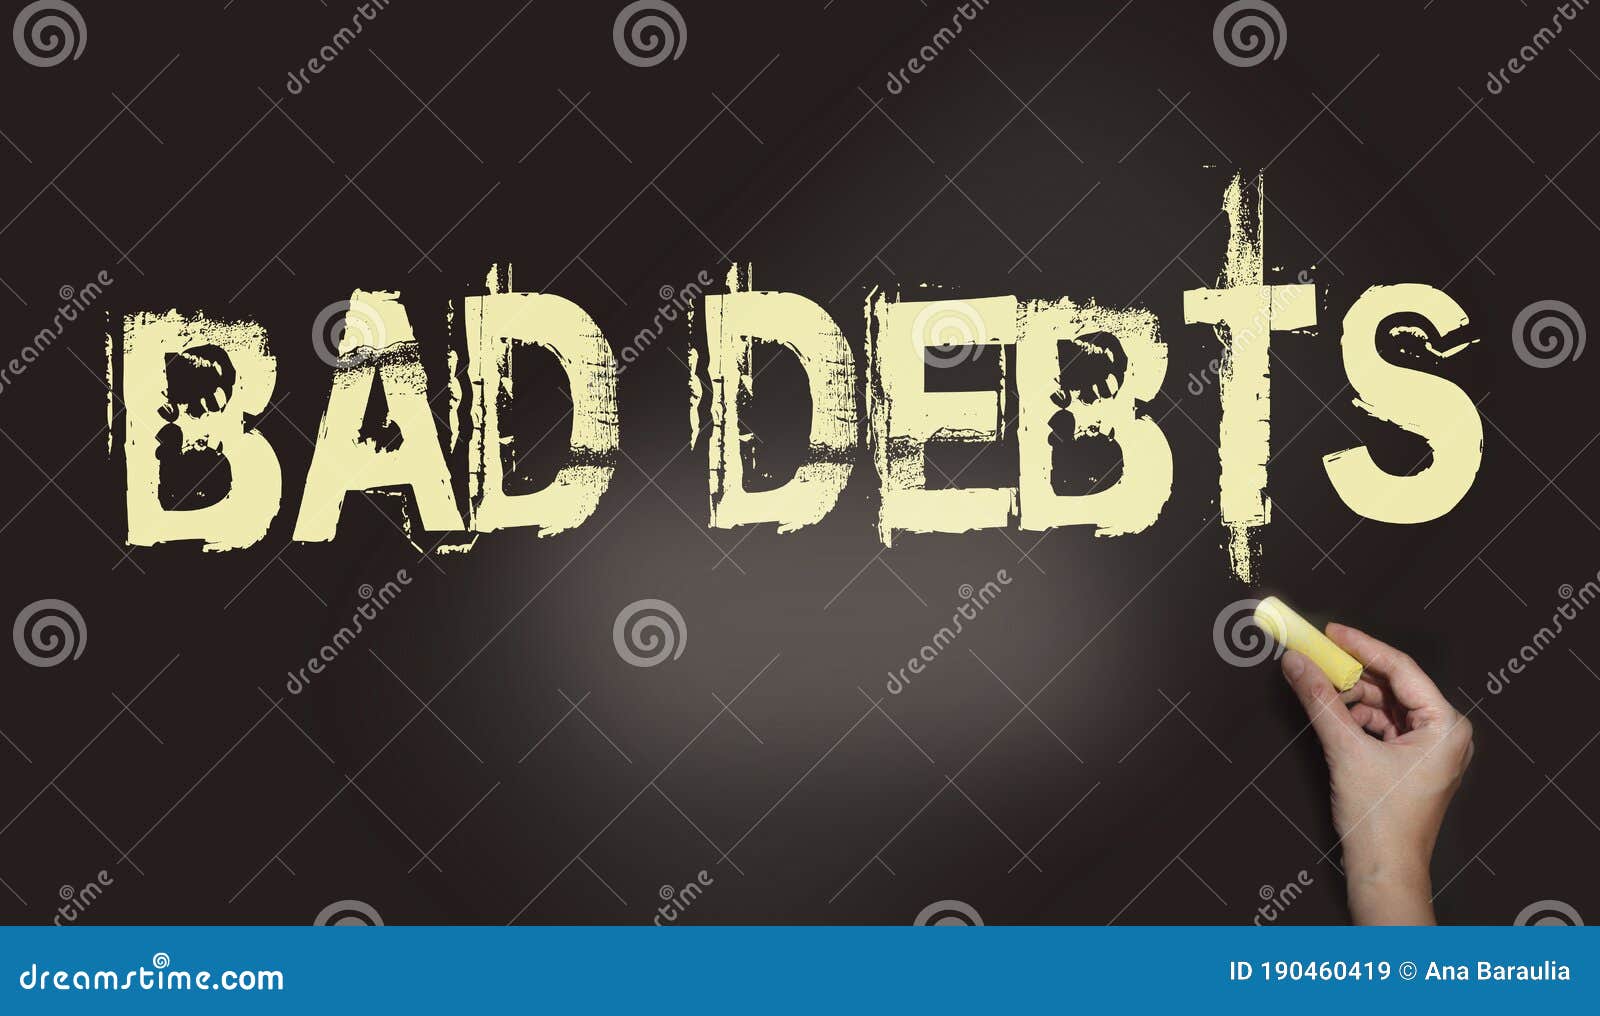 personal loans direct lenders bad credit